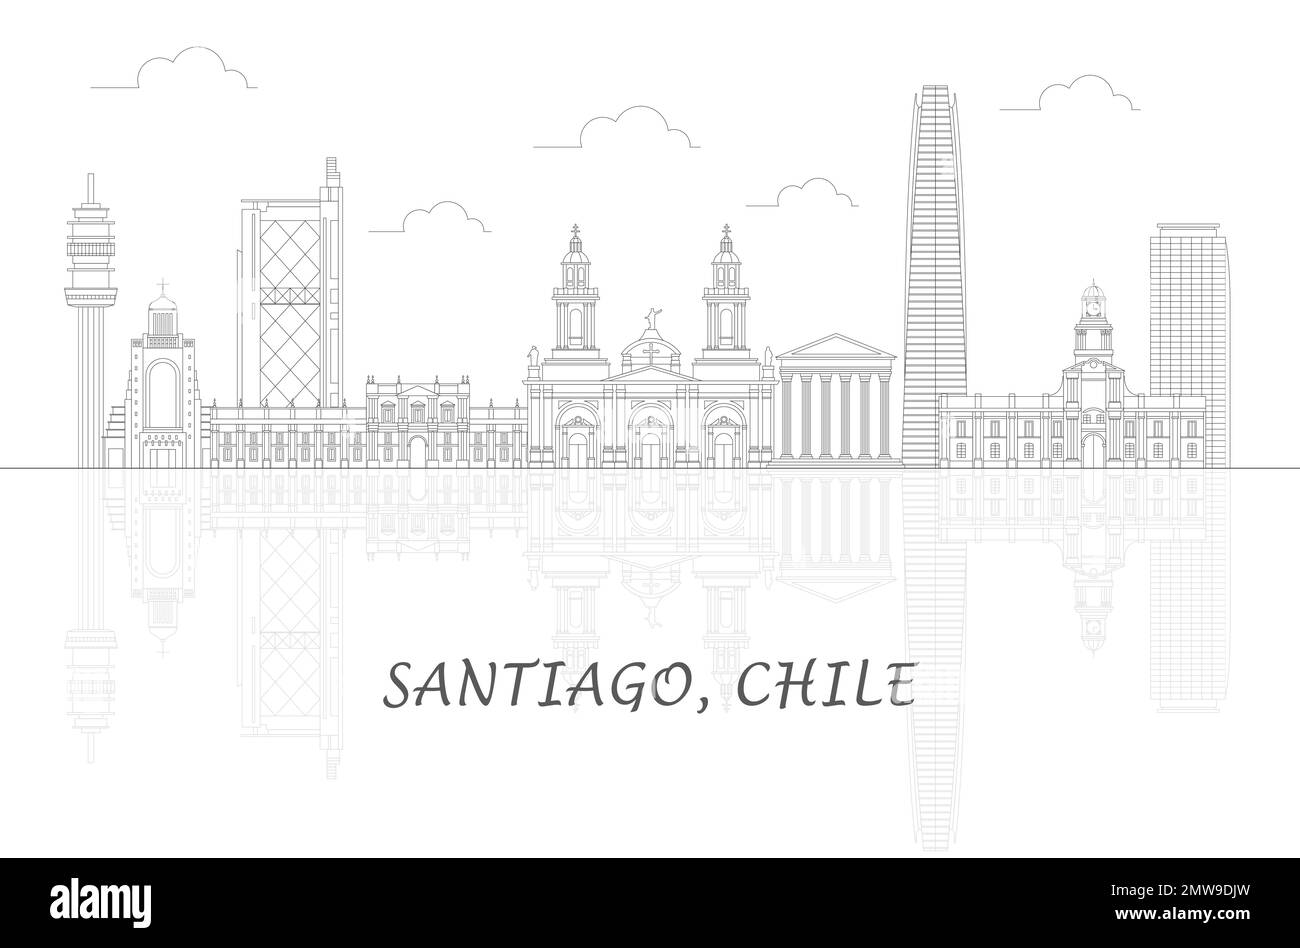 Aperçu Skyline panorama de la ville de Santiago, Chili - illustration vectorielle Illustration de Vecteur